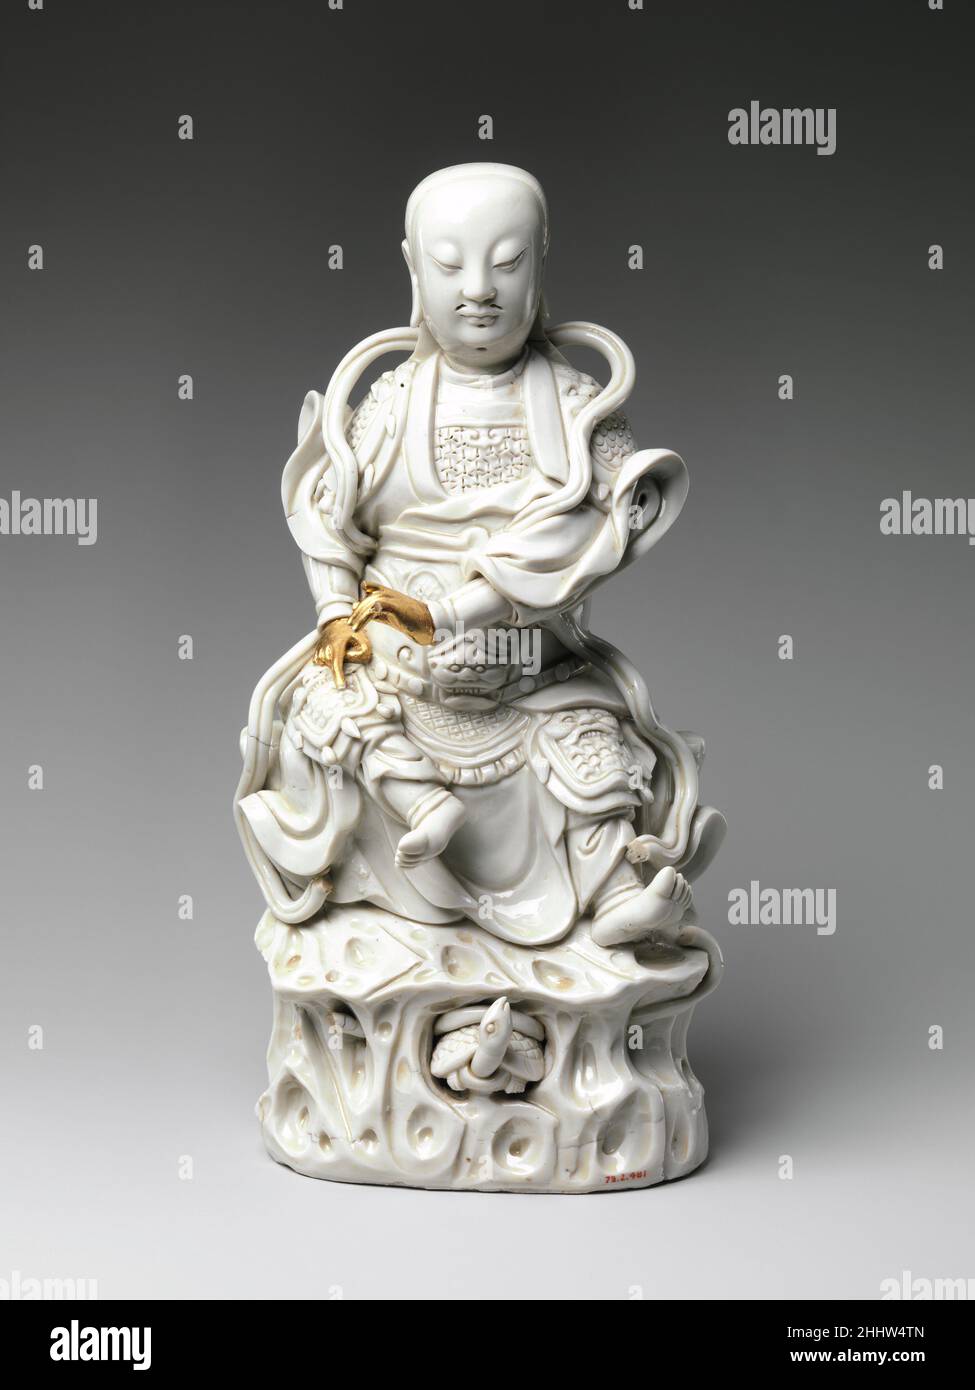 Divinità Daoiste Zhenwu primi 18th secolo Cina la tartaruga alla base della scultura identifica questa figura come Zhenwu, un'importante divinità daoista che è stata venerata anche nelle tradizioni buddiste. Zhenwu divenne particolarmente popolare durante la dinastia Ming (1368-1644), quando fu venerato come protettore sia dello stato che della famiglia imperiale. Il suo ruolo di custode riflette la sua associazione con il nord, la direzione da cui la Cina è stata costantemente minacciata dai popoli vicini dell'Asia centrale. Divinità Daoista Zhenwu 50959 Foto Stock